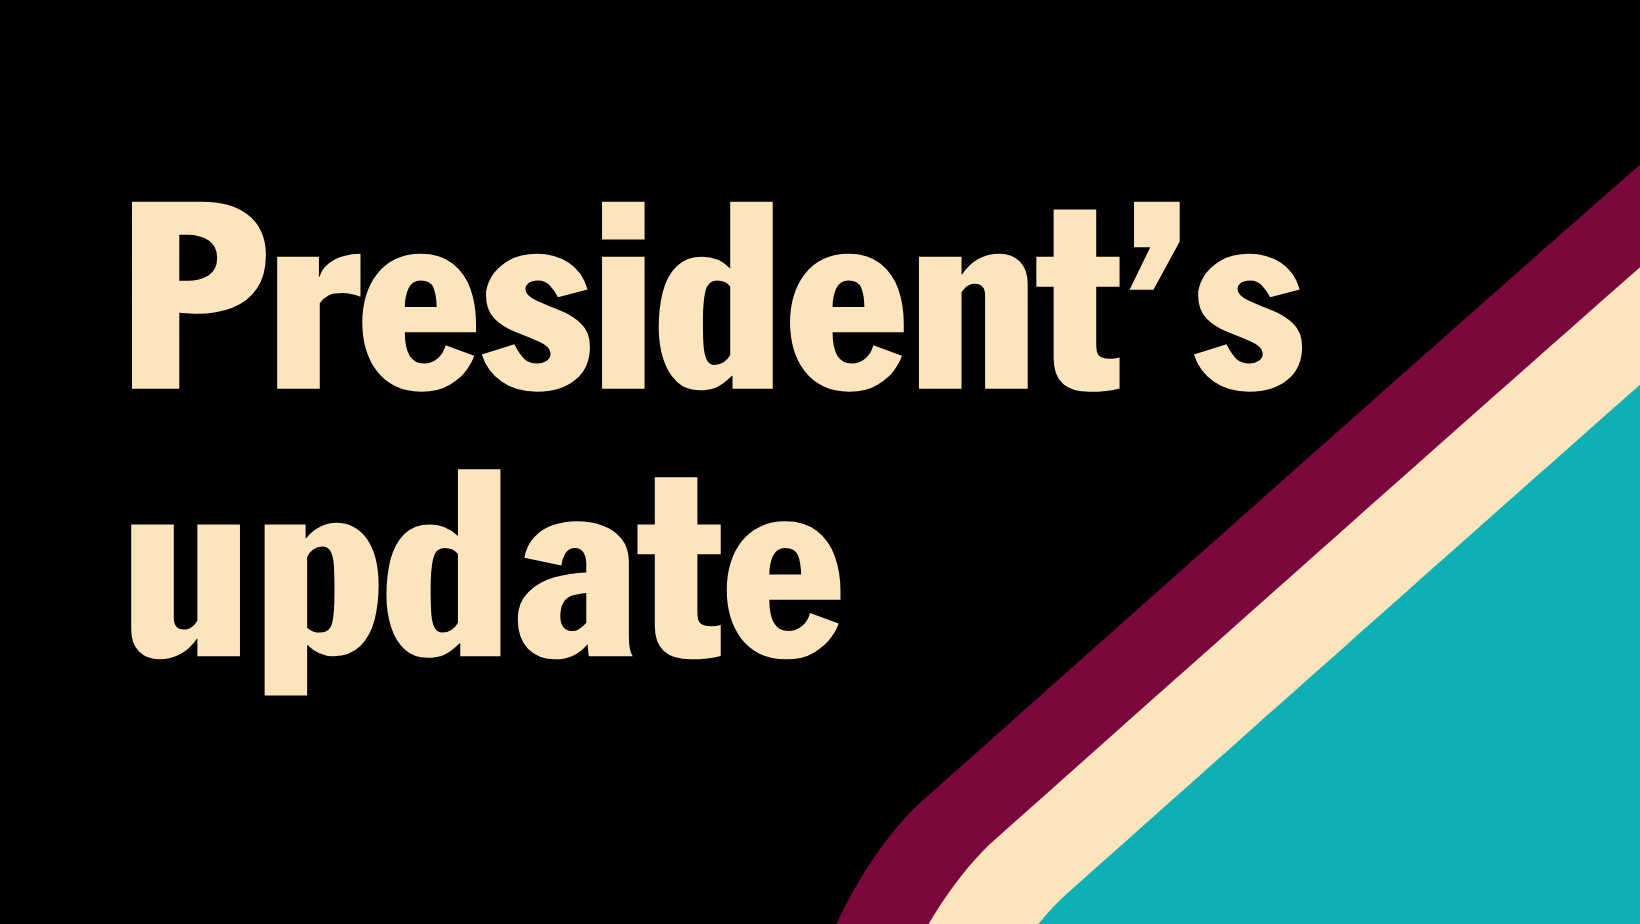 President's update